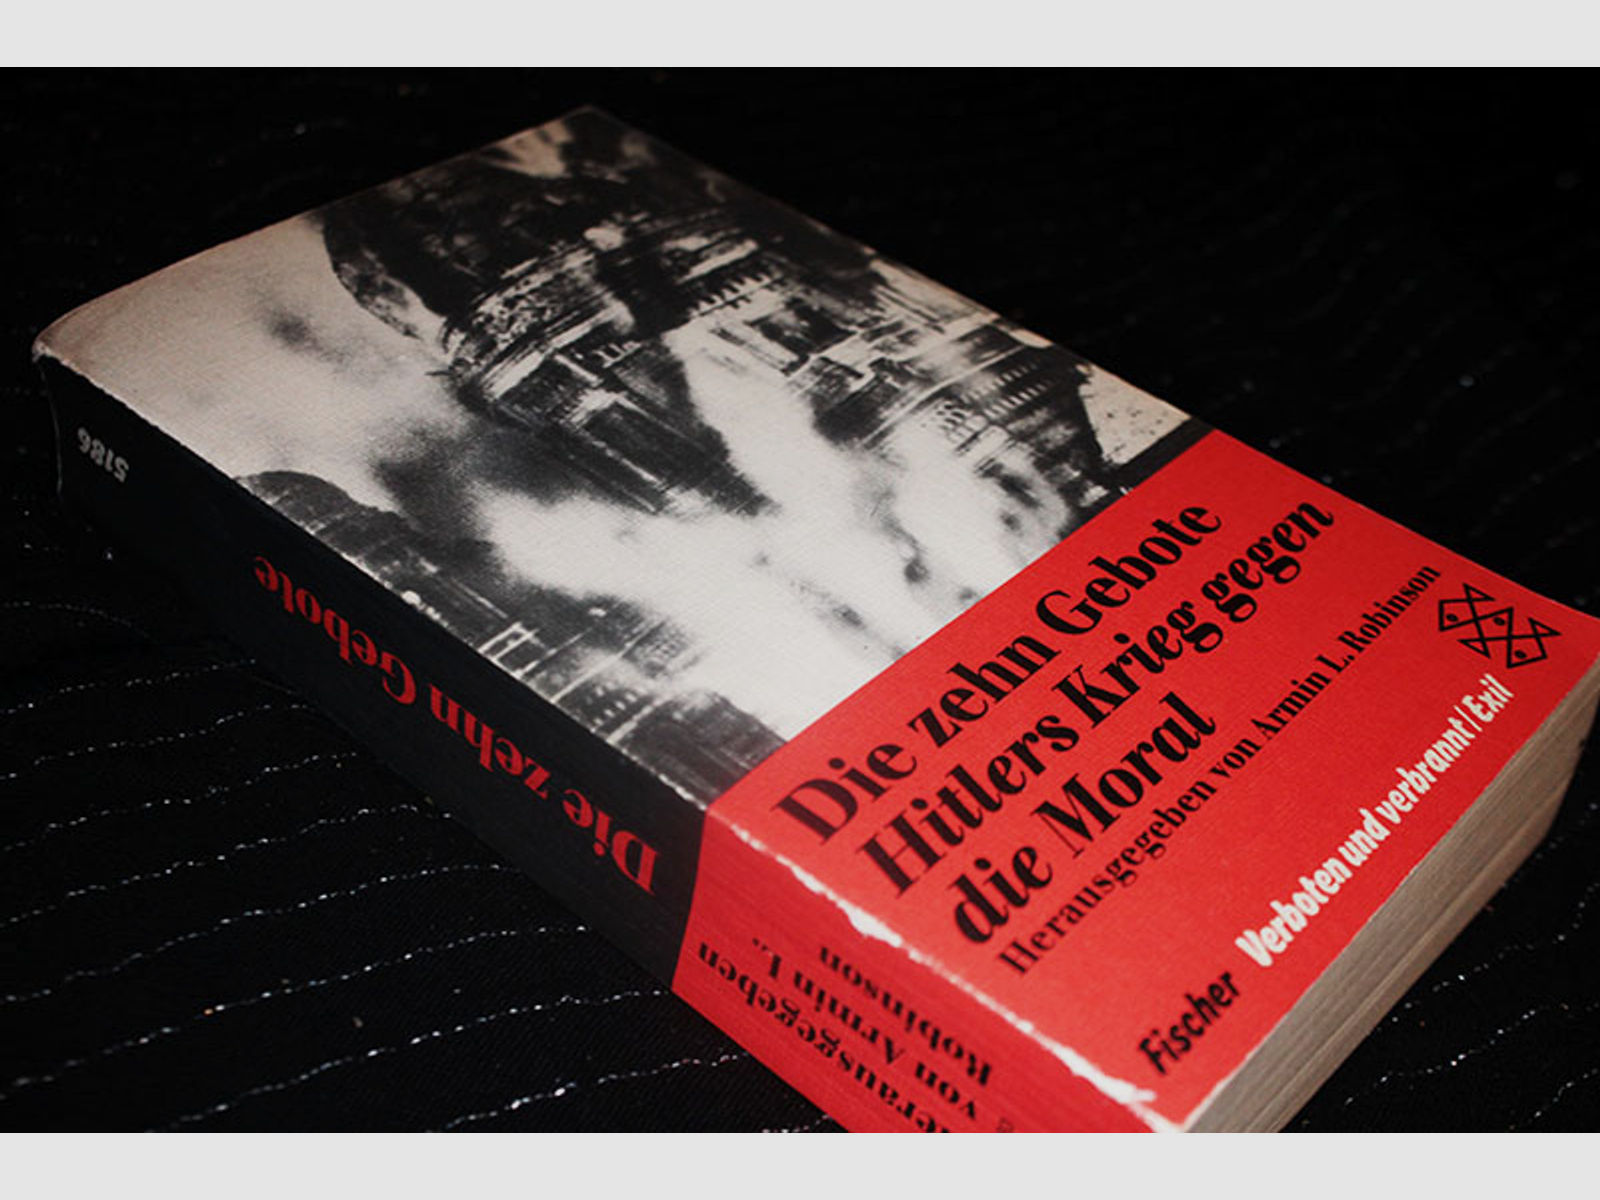 Die zehn Gebote - Hitlers Krieg gegen die Moral (verboten und verbannt) Armin L. Robinson